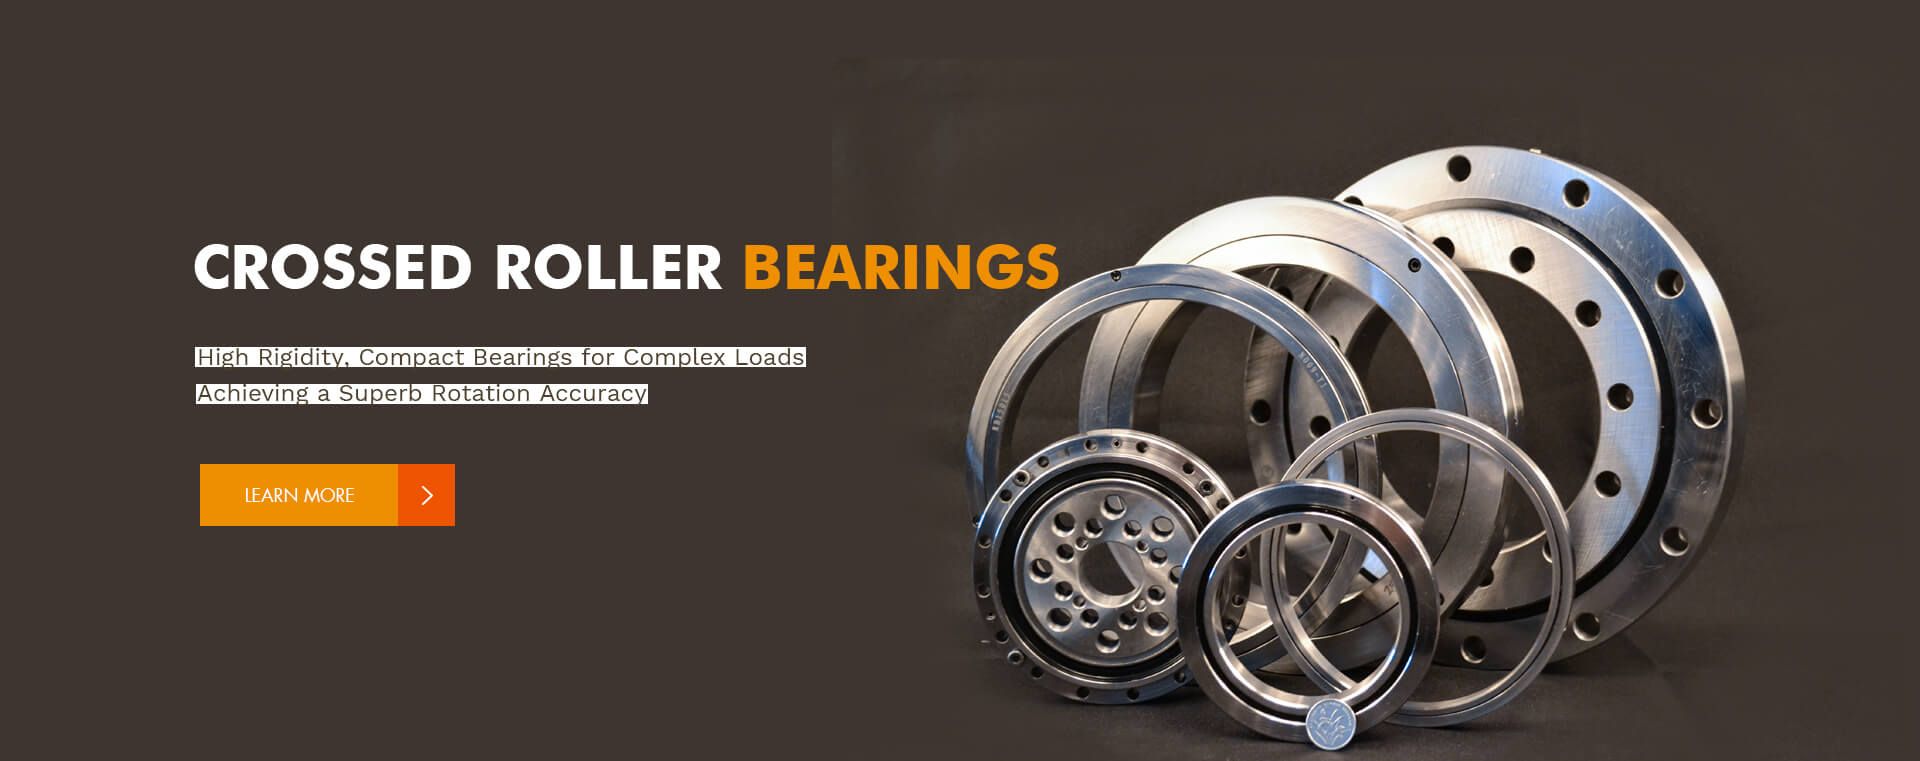 crossed roller bearings